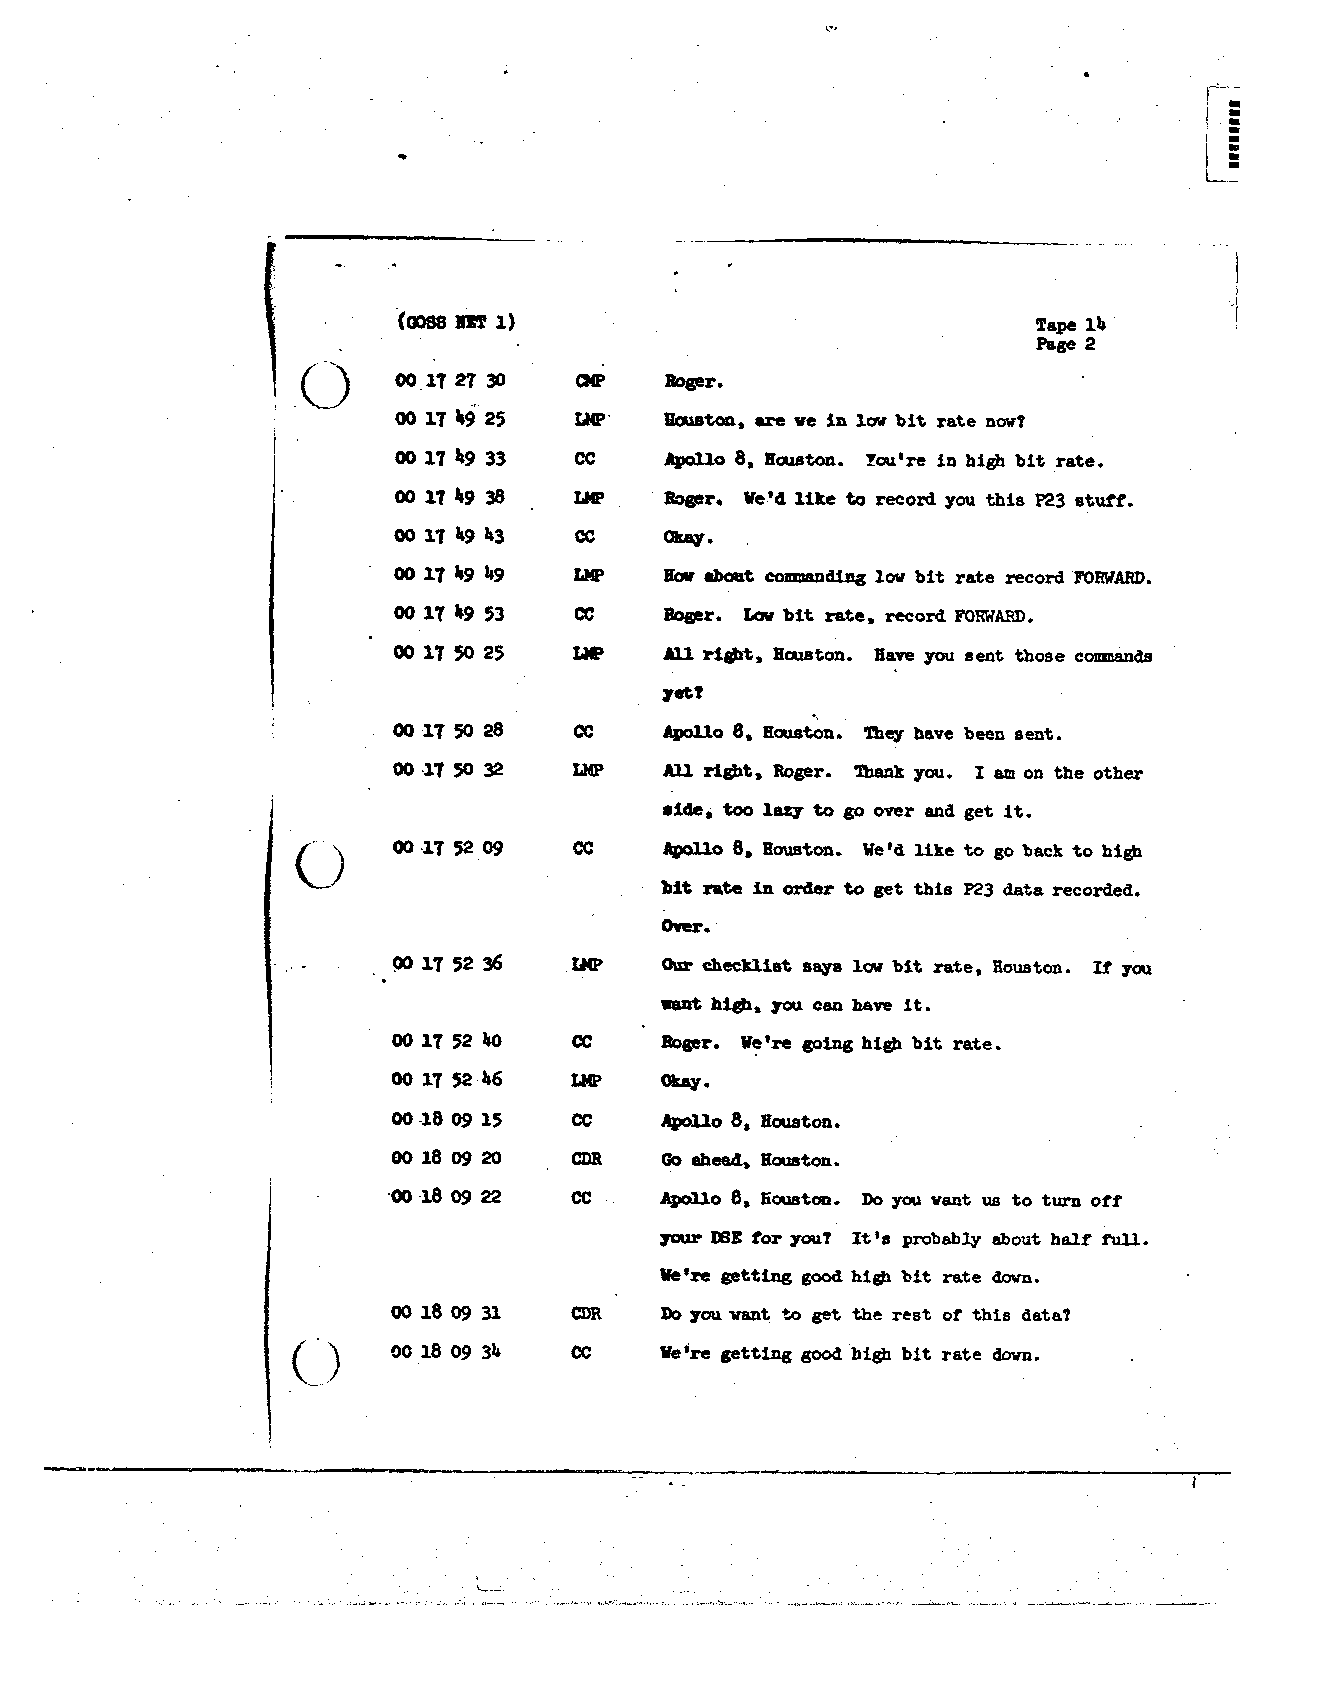 Page 123 of Apollo 8’s original transcript